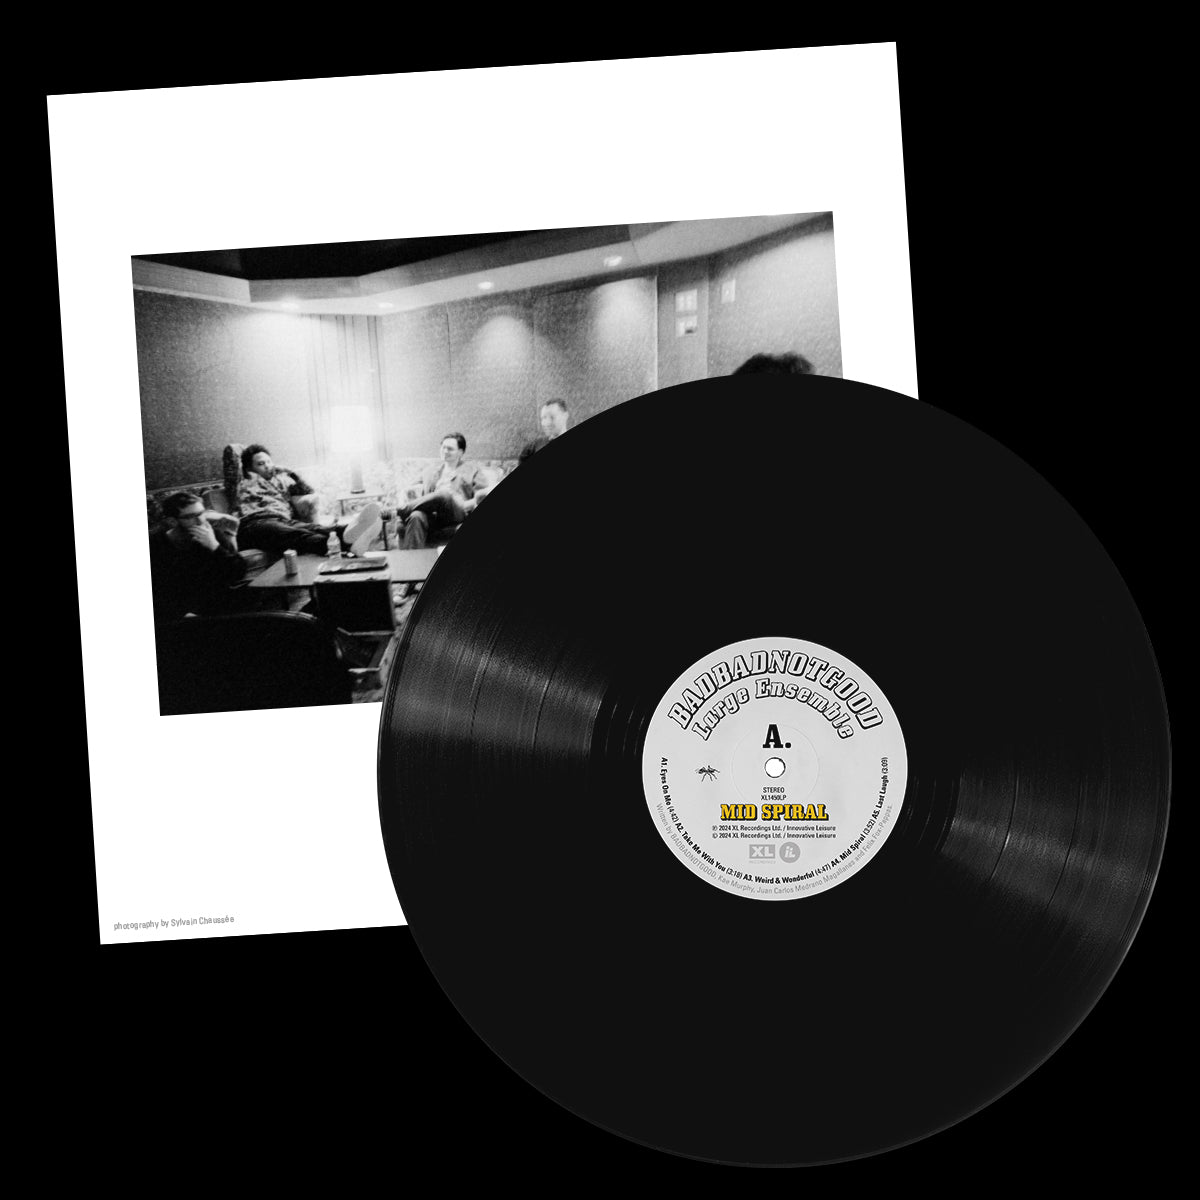 BADBADNOTGOOD - Mid Spiral: Vinyl 2LP